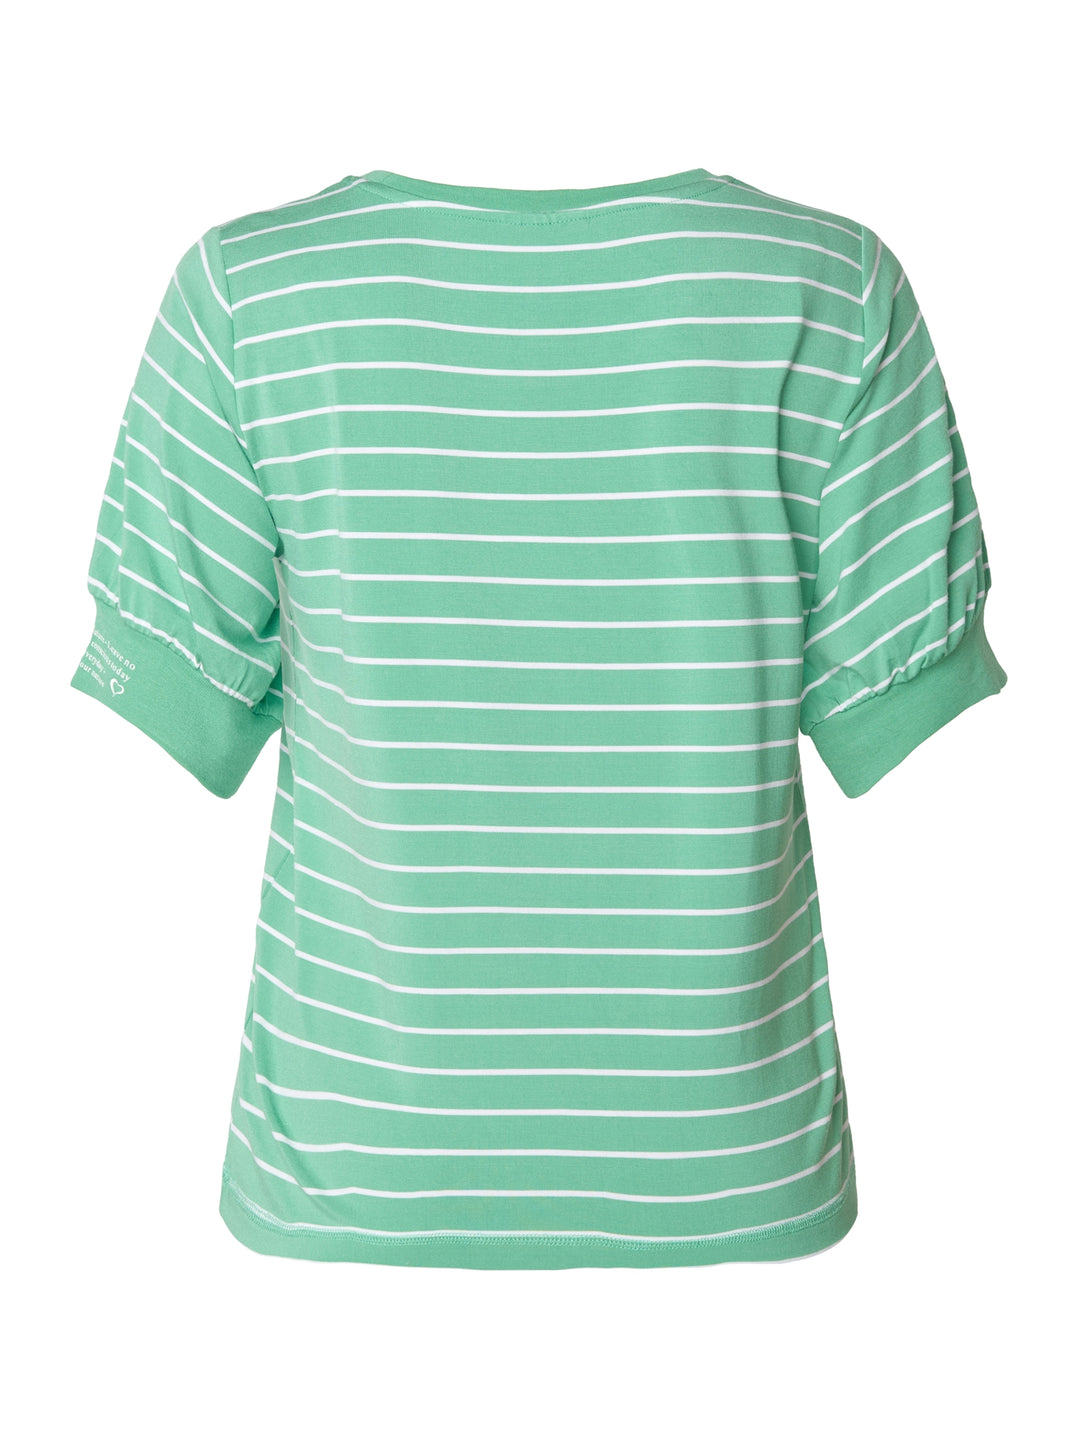 groen gestreept t-shirt